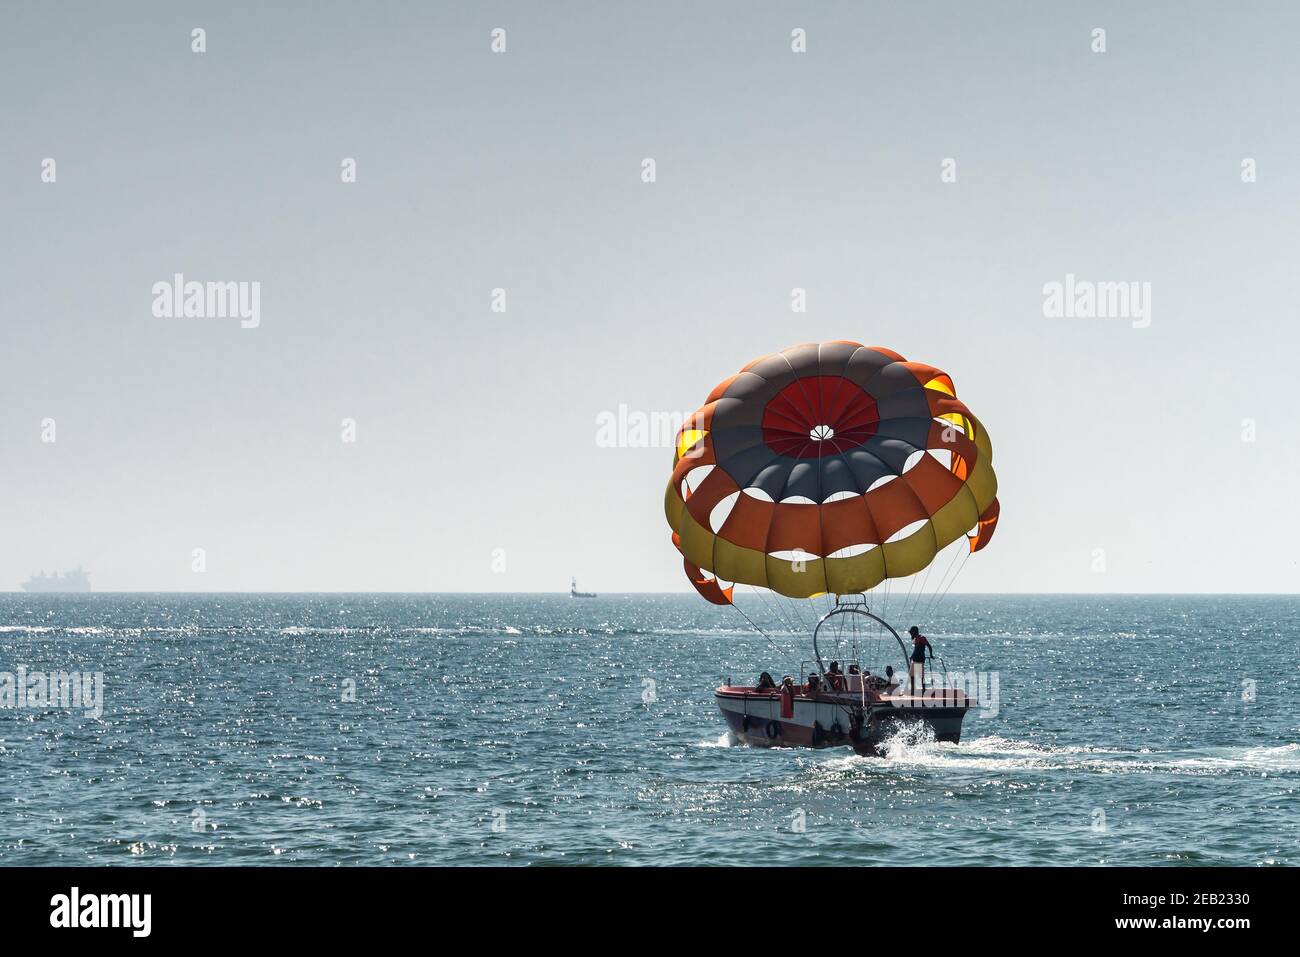 Nicht erkennbare Leute bereiten sich auf dem Boot auf Parasailing vor, fliegen bald. Selektiver Fokus auf Fallschirm. Konzept des Urlaubs, Extremsport am Strand Stockfoto